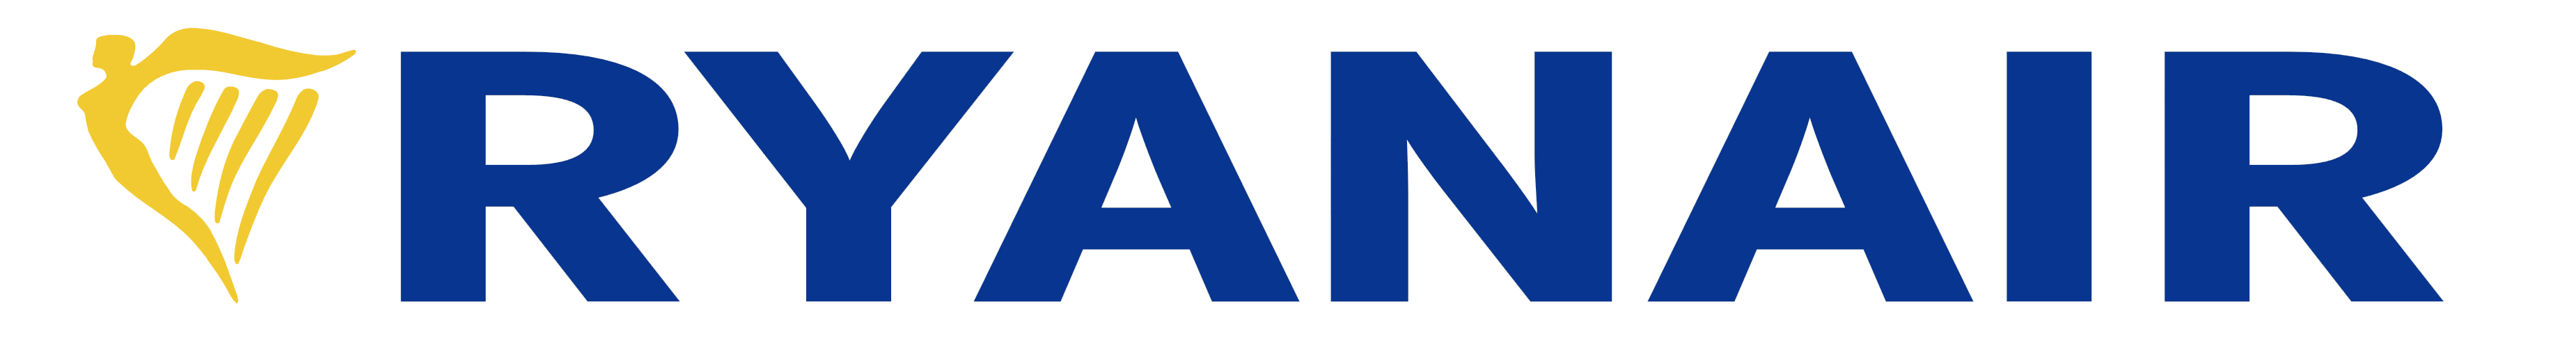 Ryanair logo, logotype